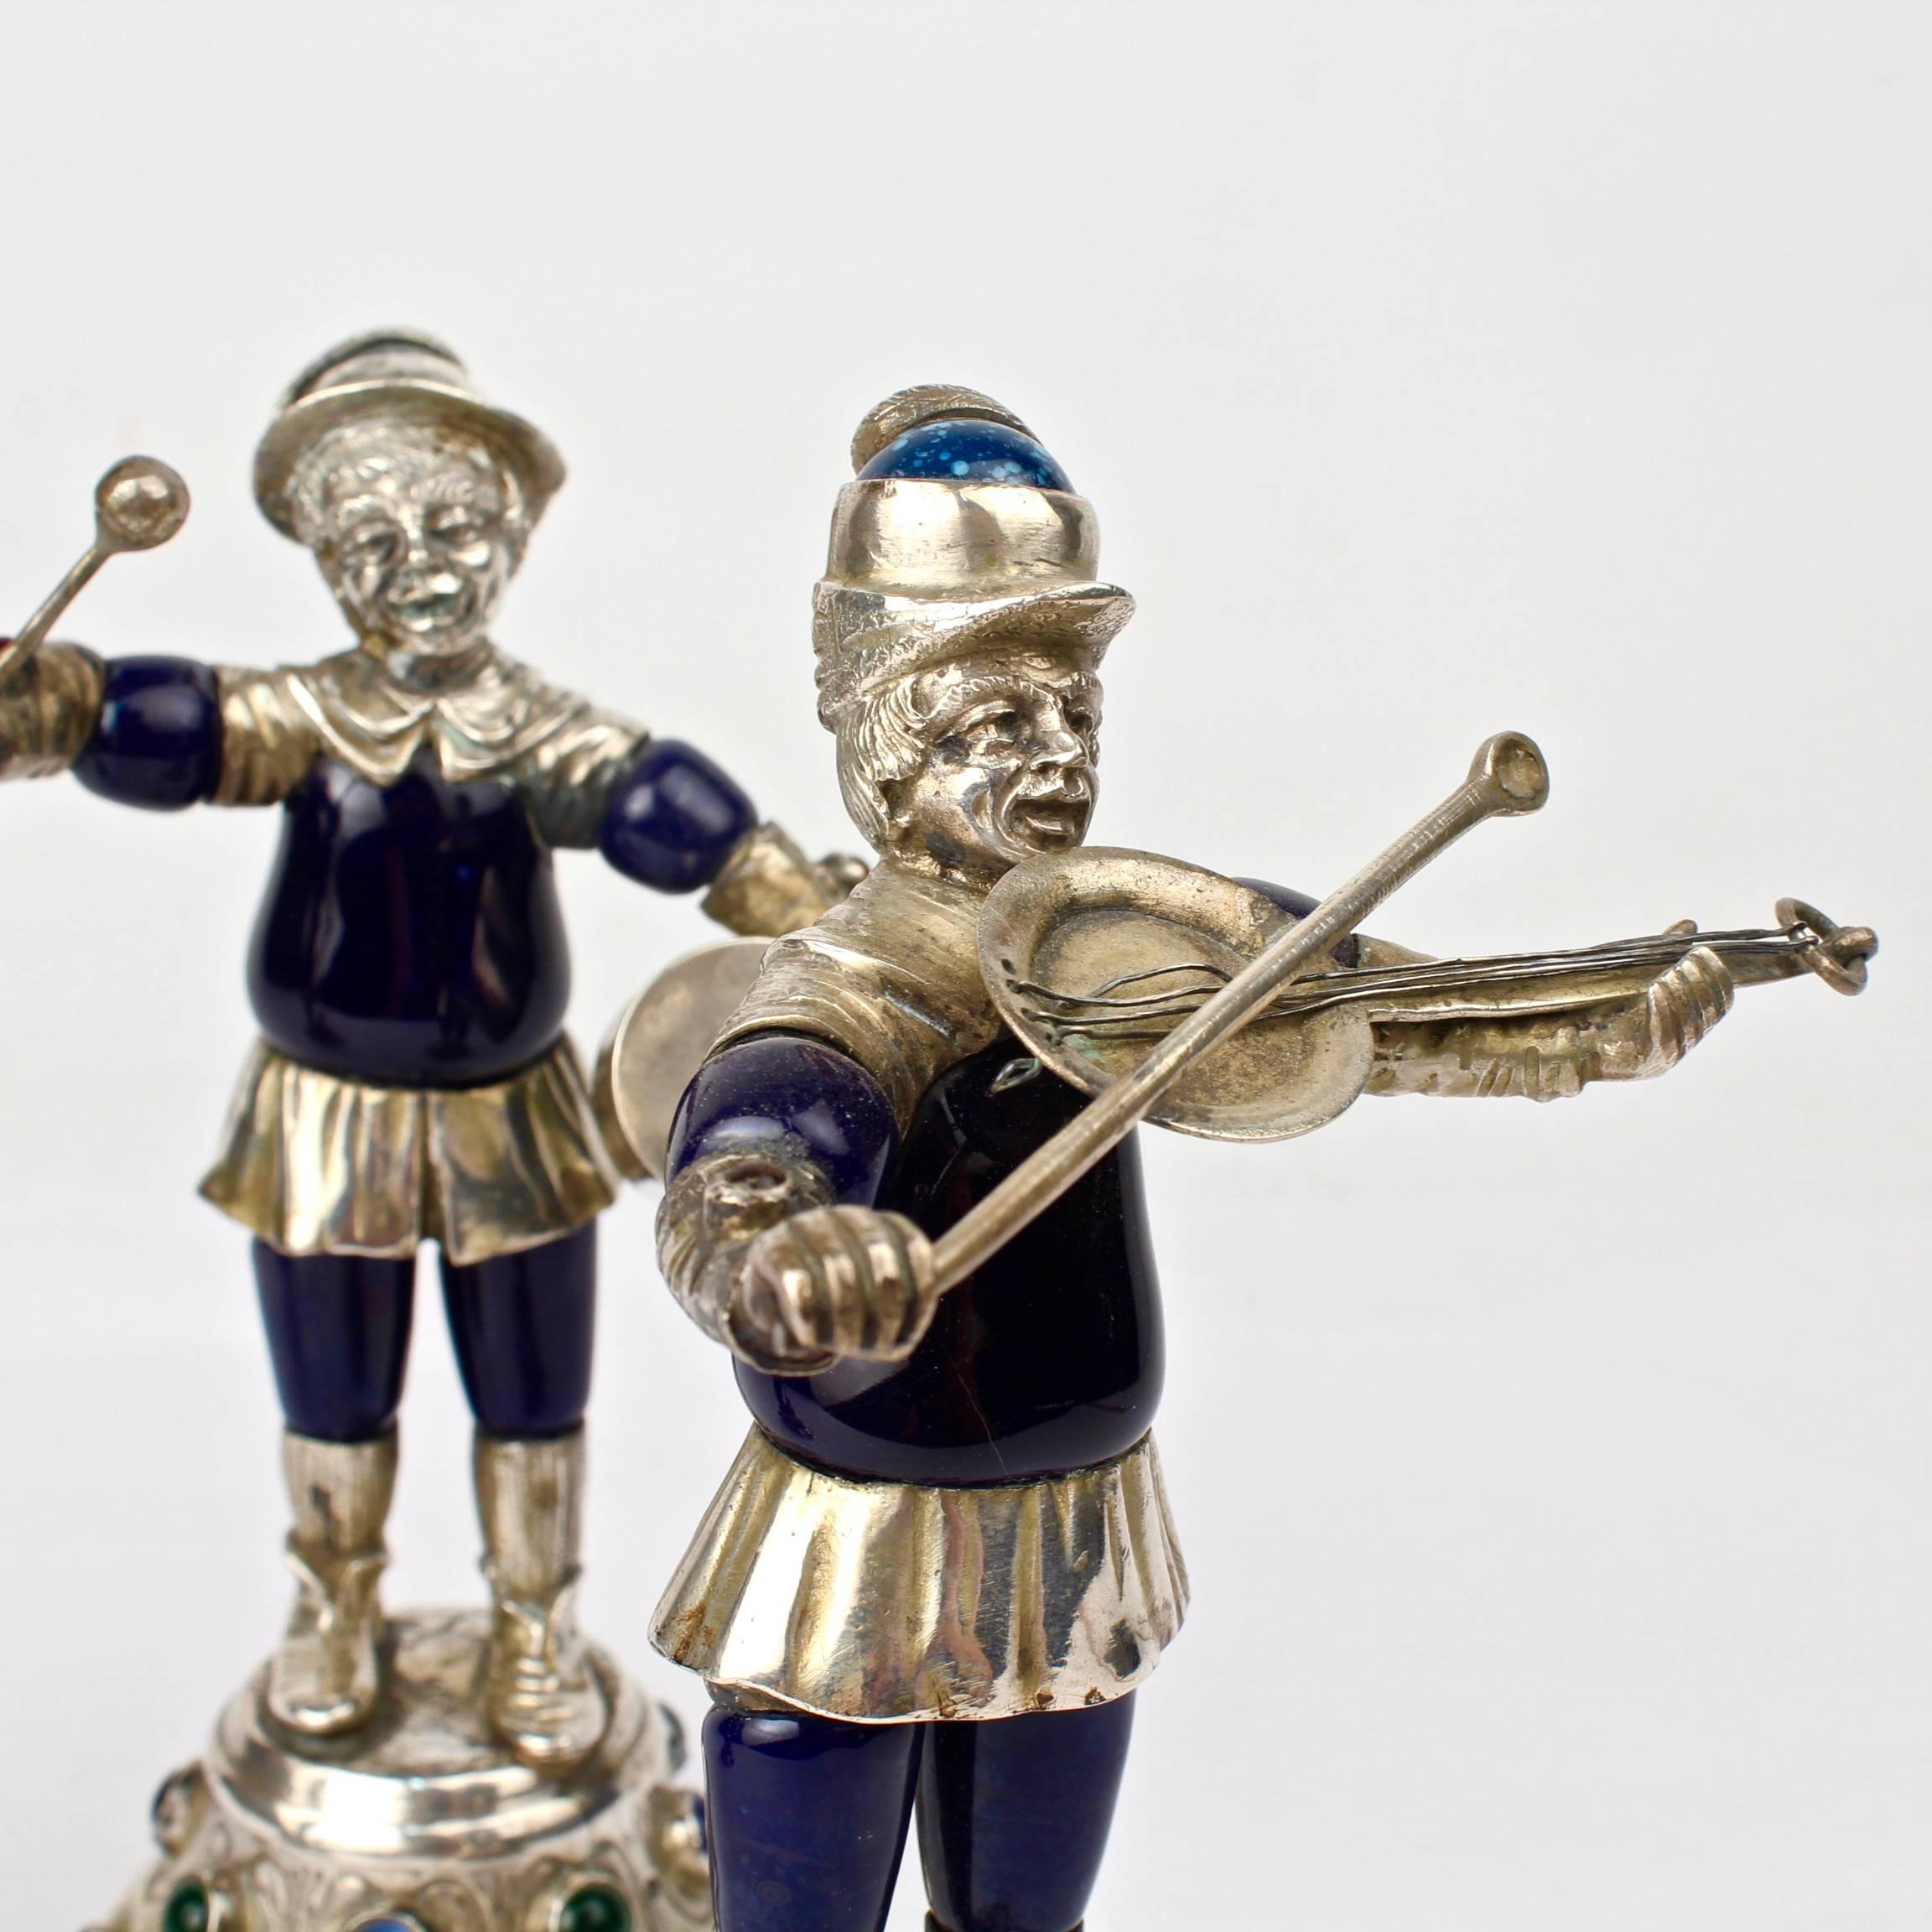 Eine Gruppe von drei seltenen und schrecklich skurrilen deutschen oder österreichischen Musikerfiguren aus Silber. Hergestellt aus Münzsilber und Emaille mit Glas-Cabochon-Steinen an den Sockeln.

Diese Art von Figuren waren im 19. Jahrhundert in